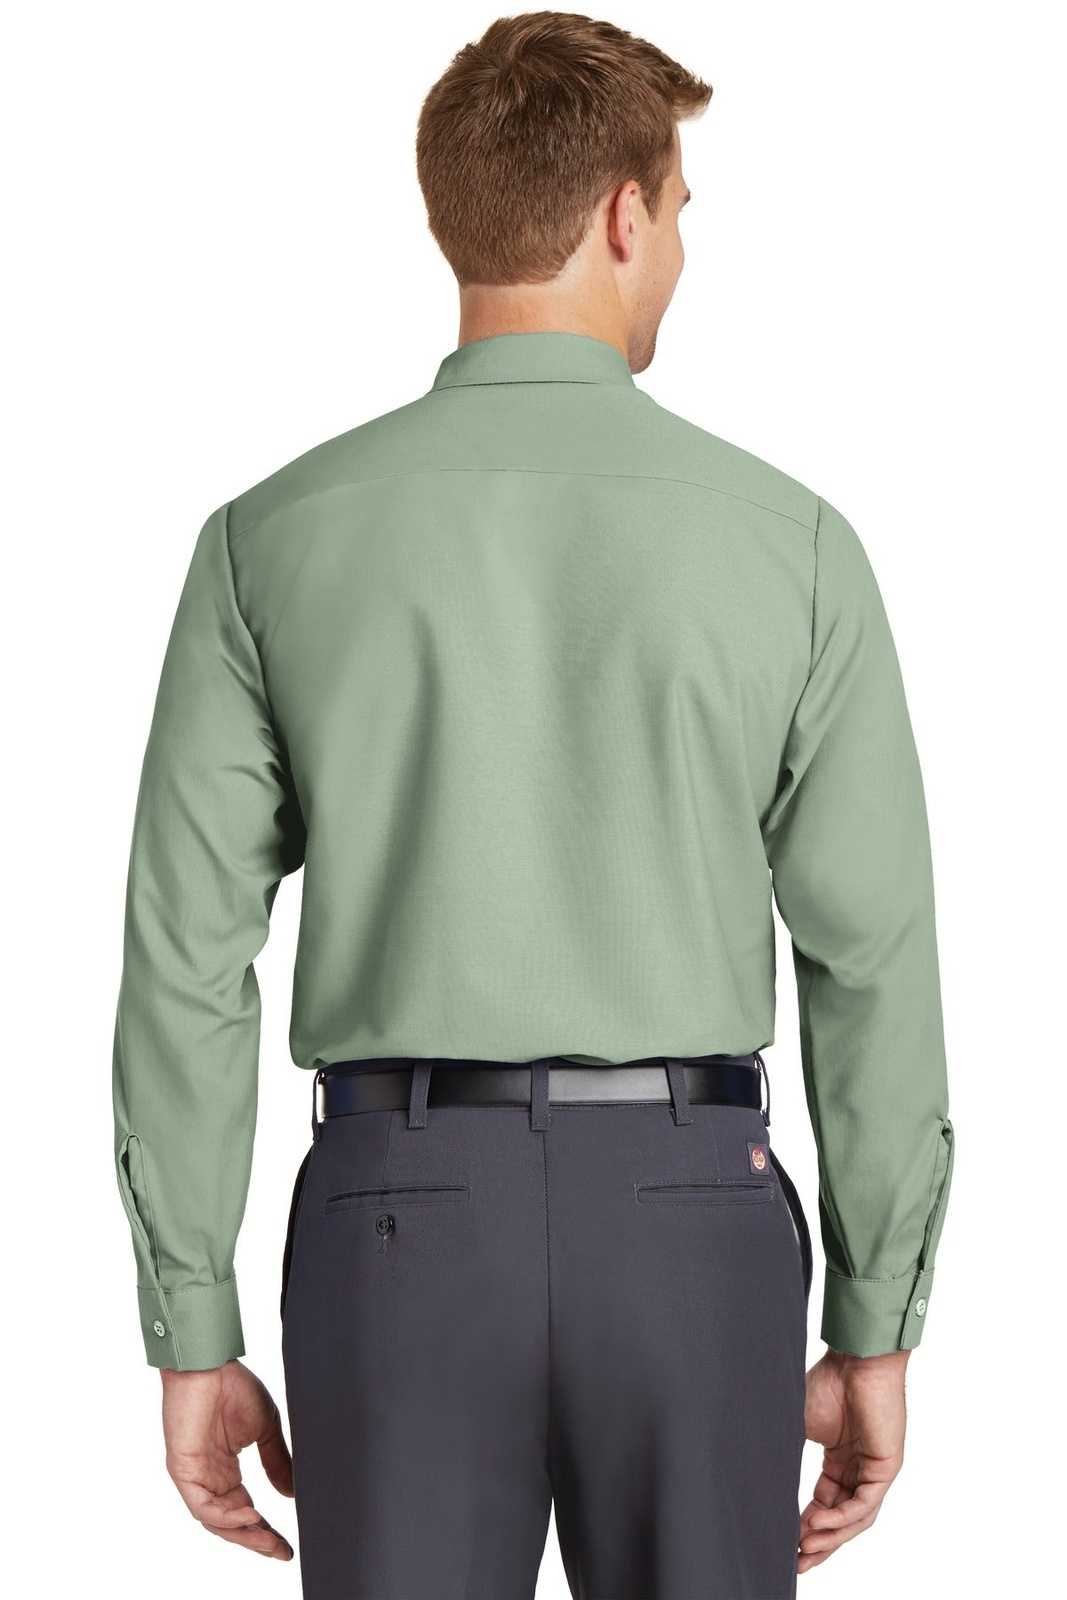 Red Kap SP14 Long Sleeve Industrial Work Shirt - Light Green - HIT a Double - 2